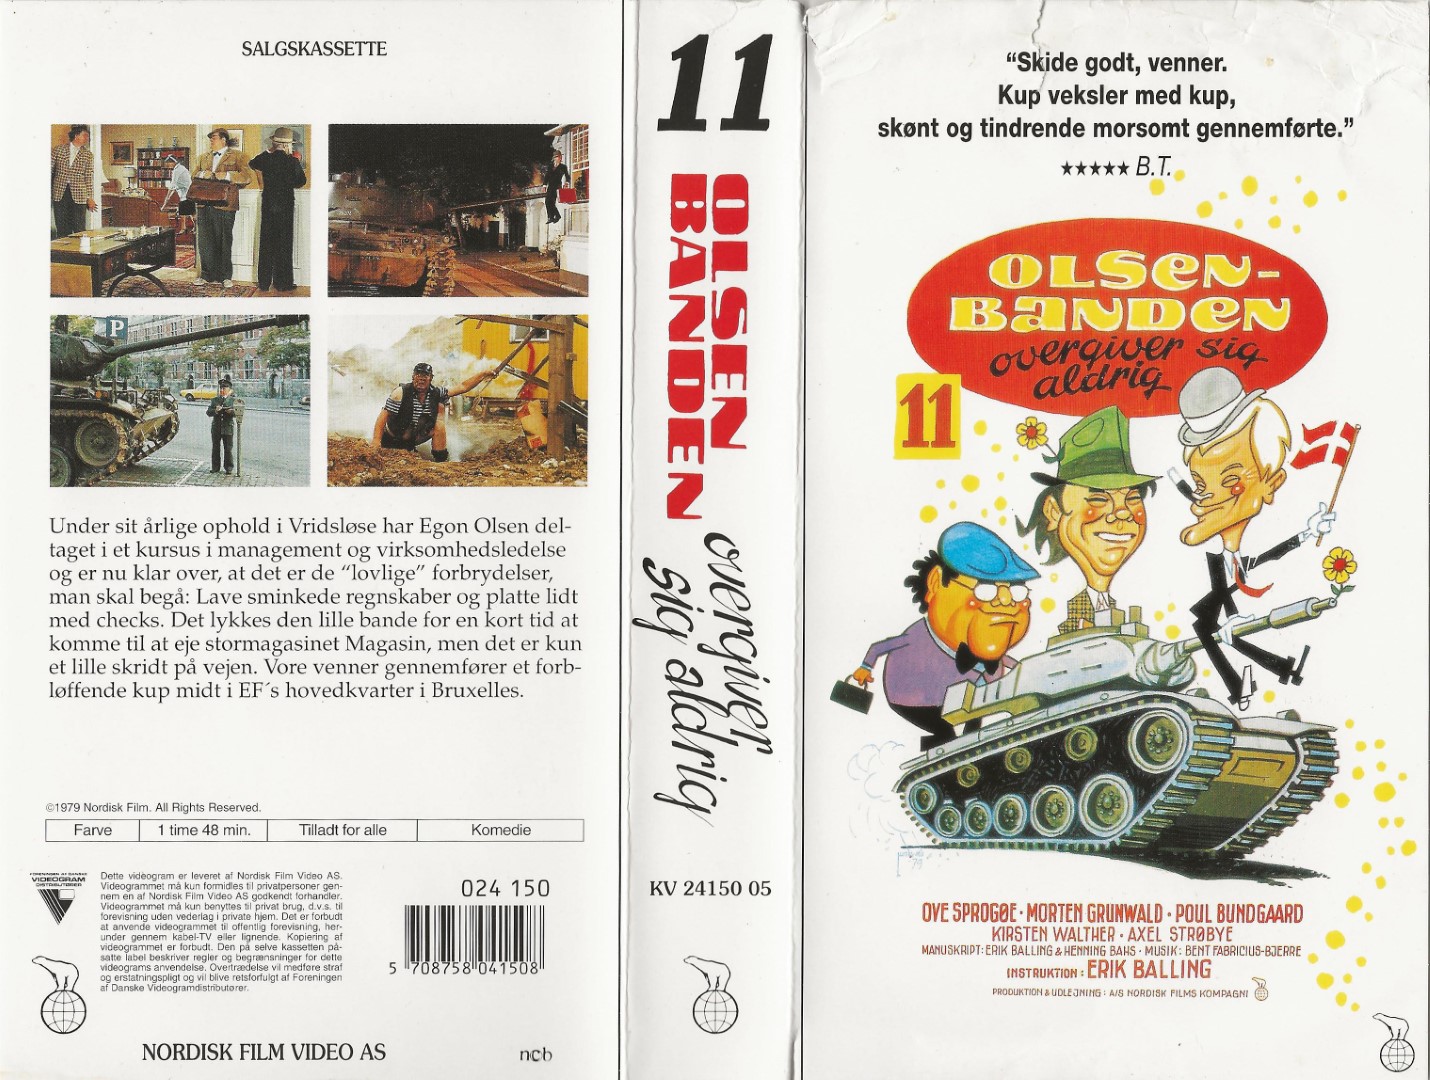 Olsen Banden 11 - Olsen Banden overgiver sig aldrig  VHS Nordisk Film 1994